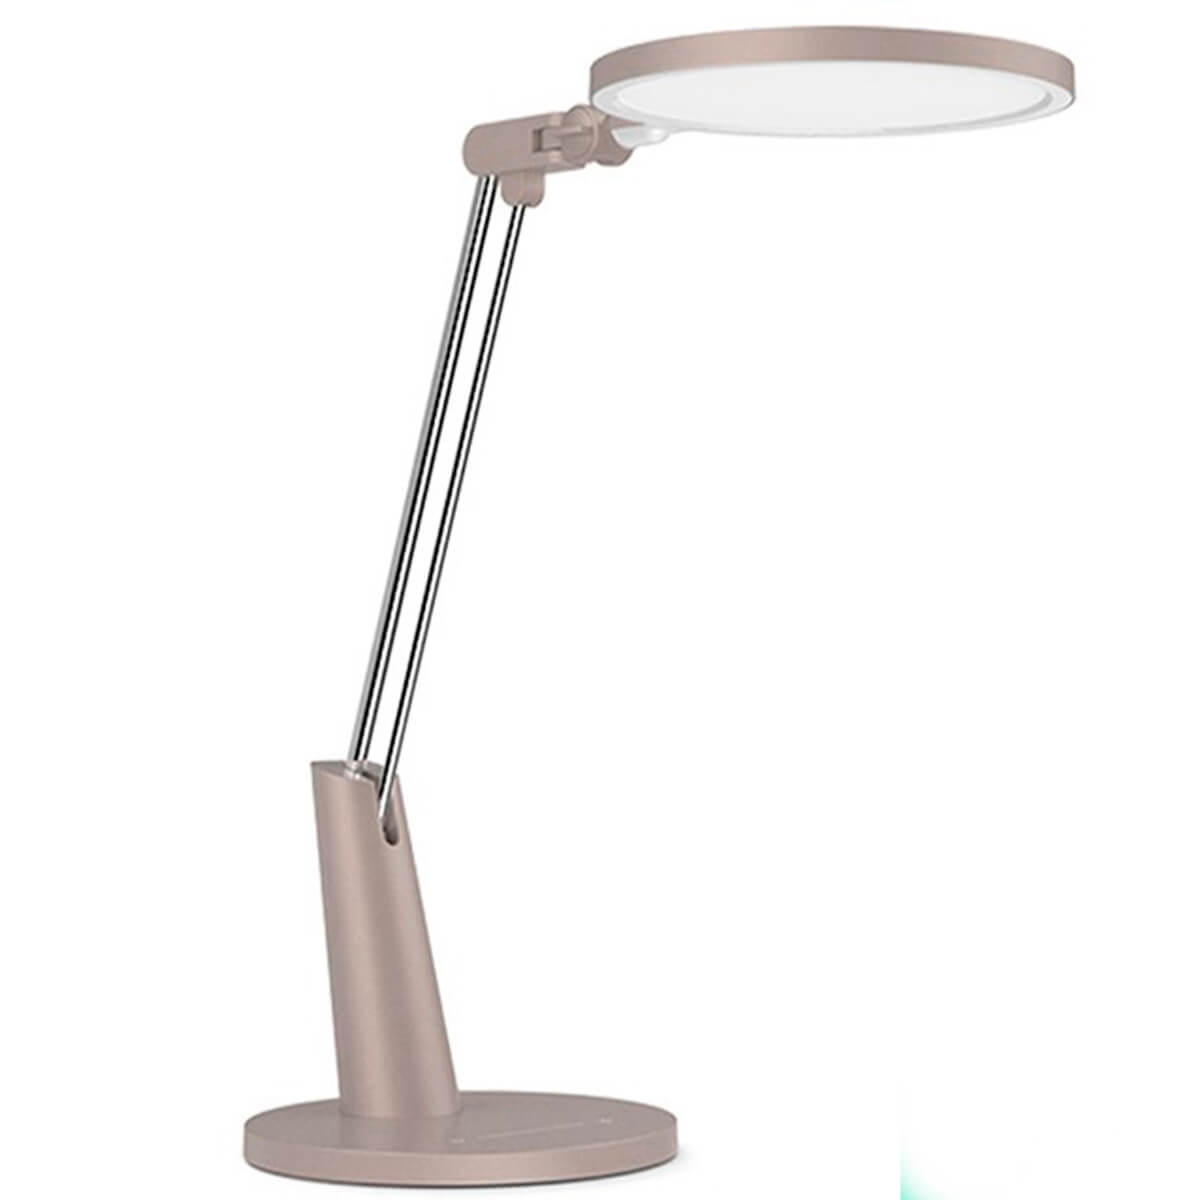 Настольная смарт-лампа Yeelight Serene Eye-Friendly Desk Lamp Pro (YLTD04YL)